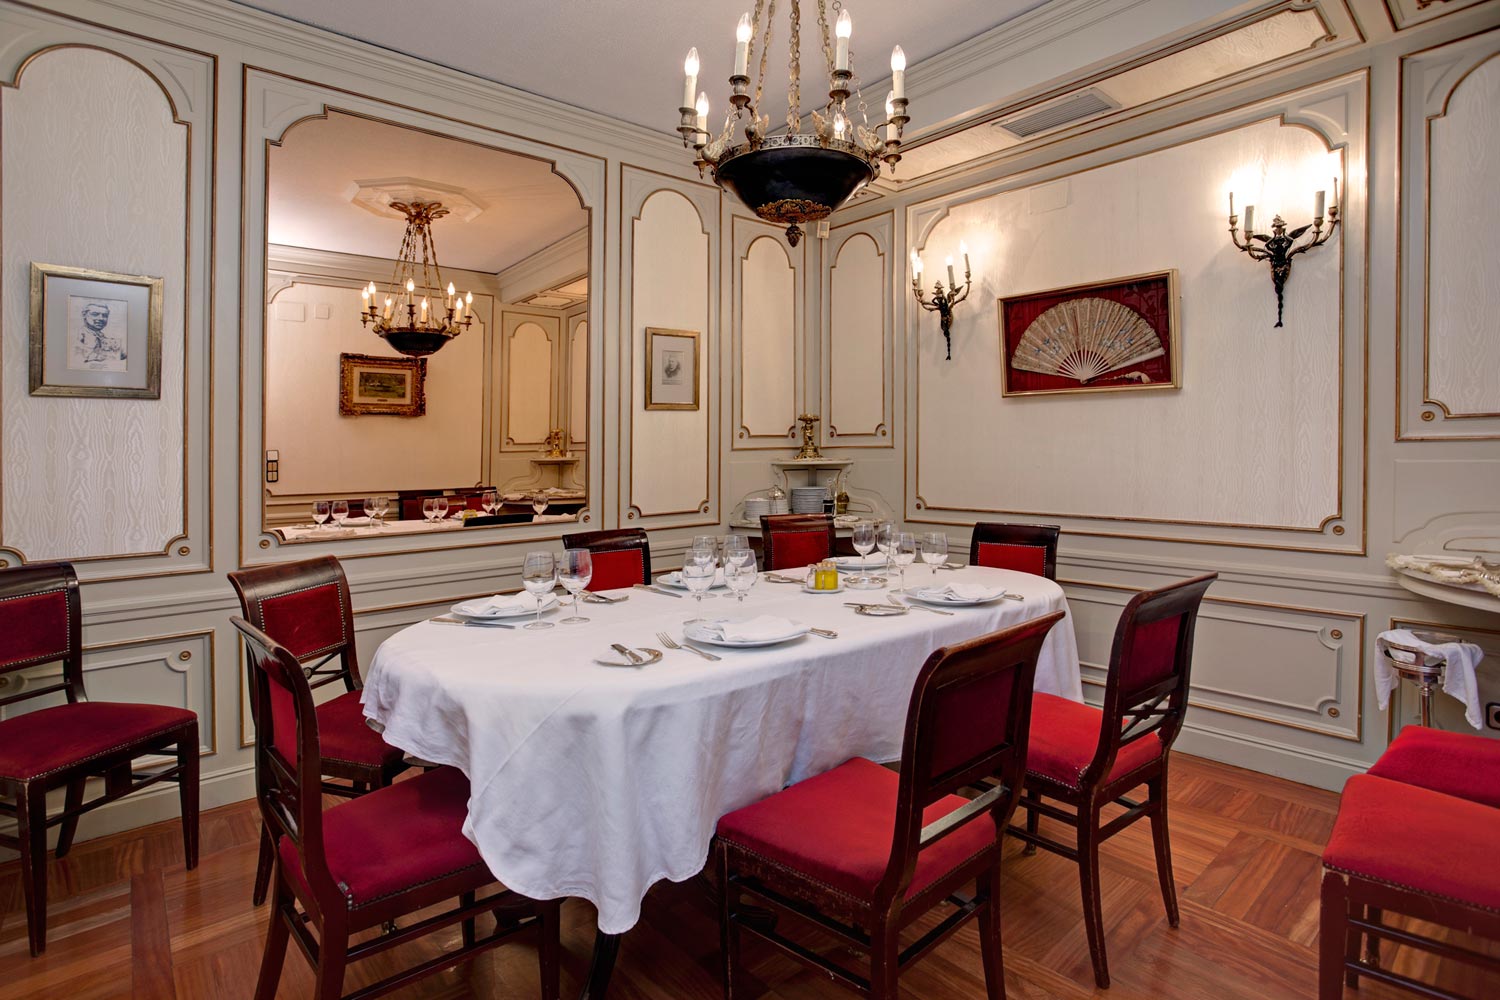 Cena romntica en Lhardy, uno de los restaurantes ms emblemticos de Madrid